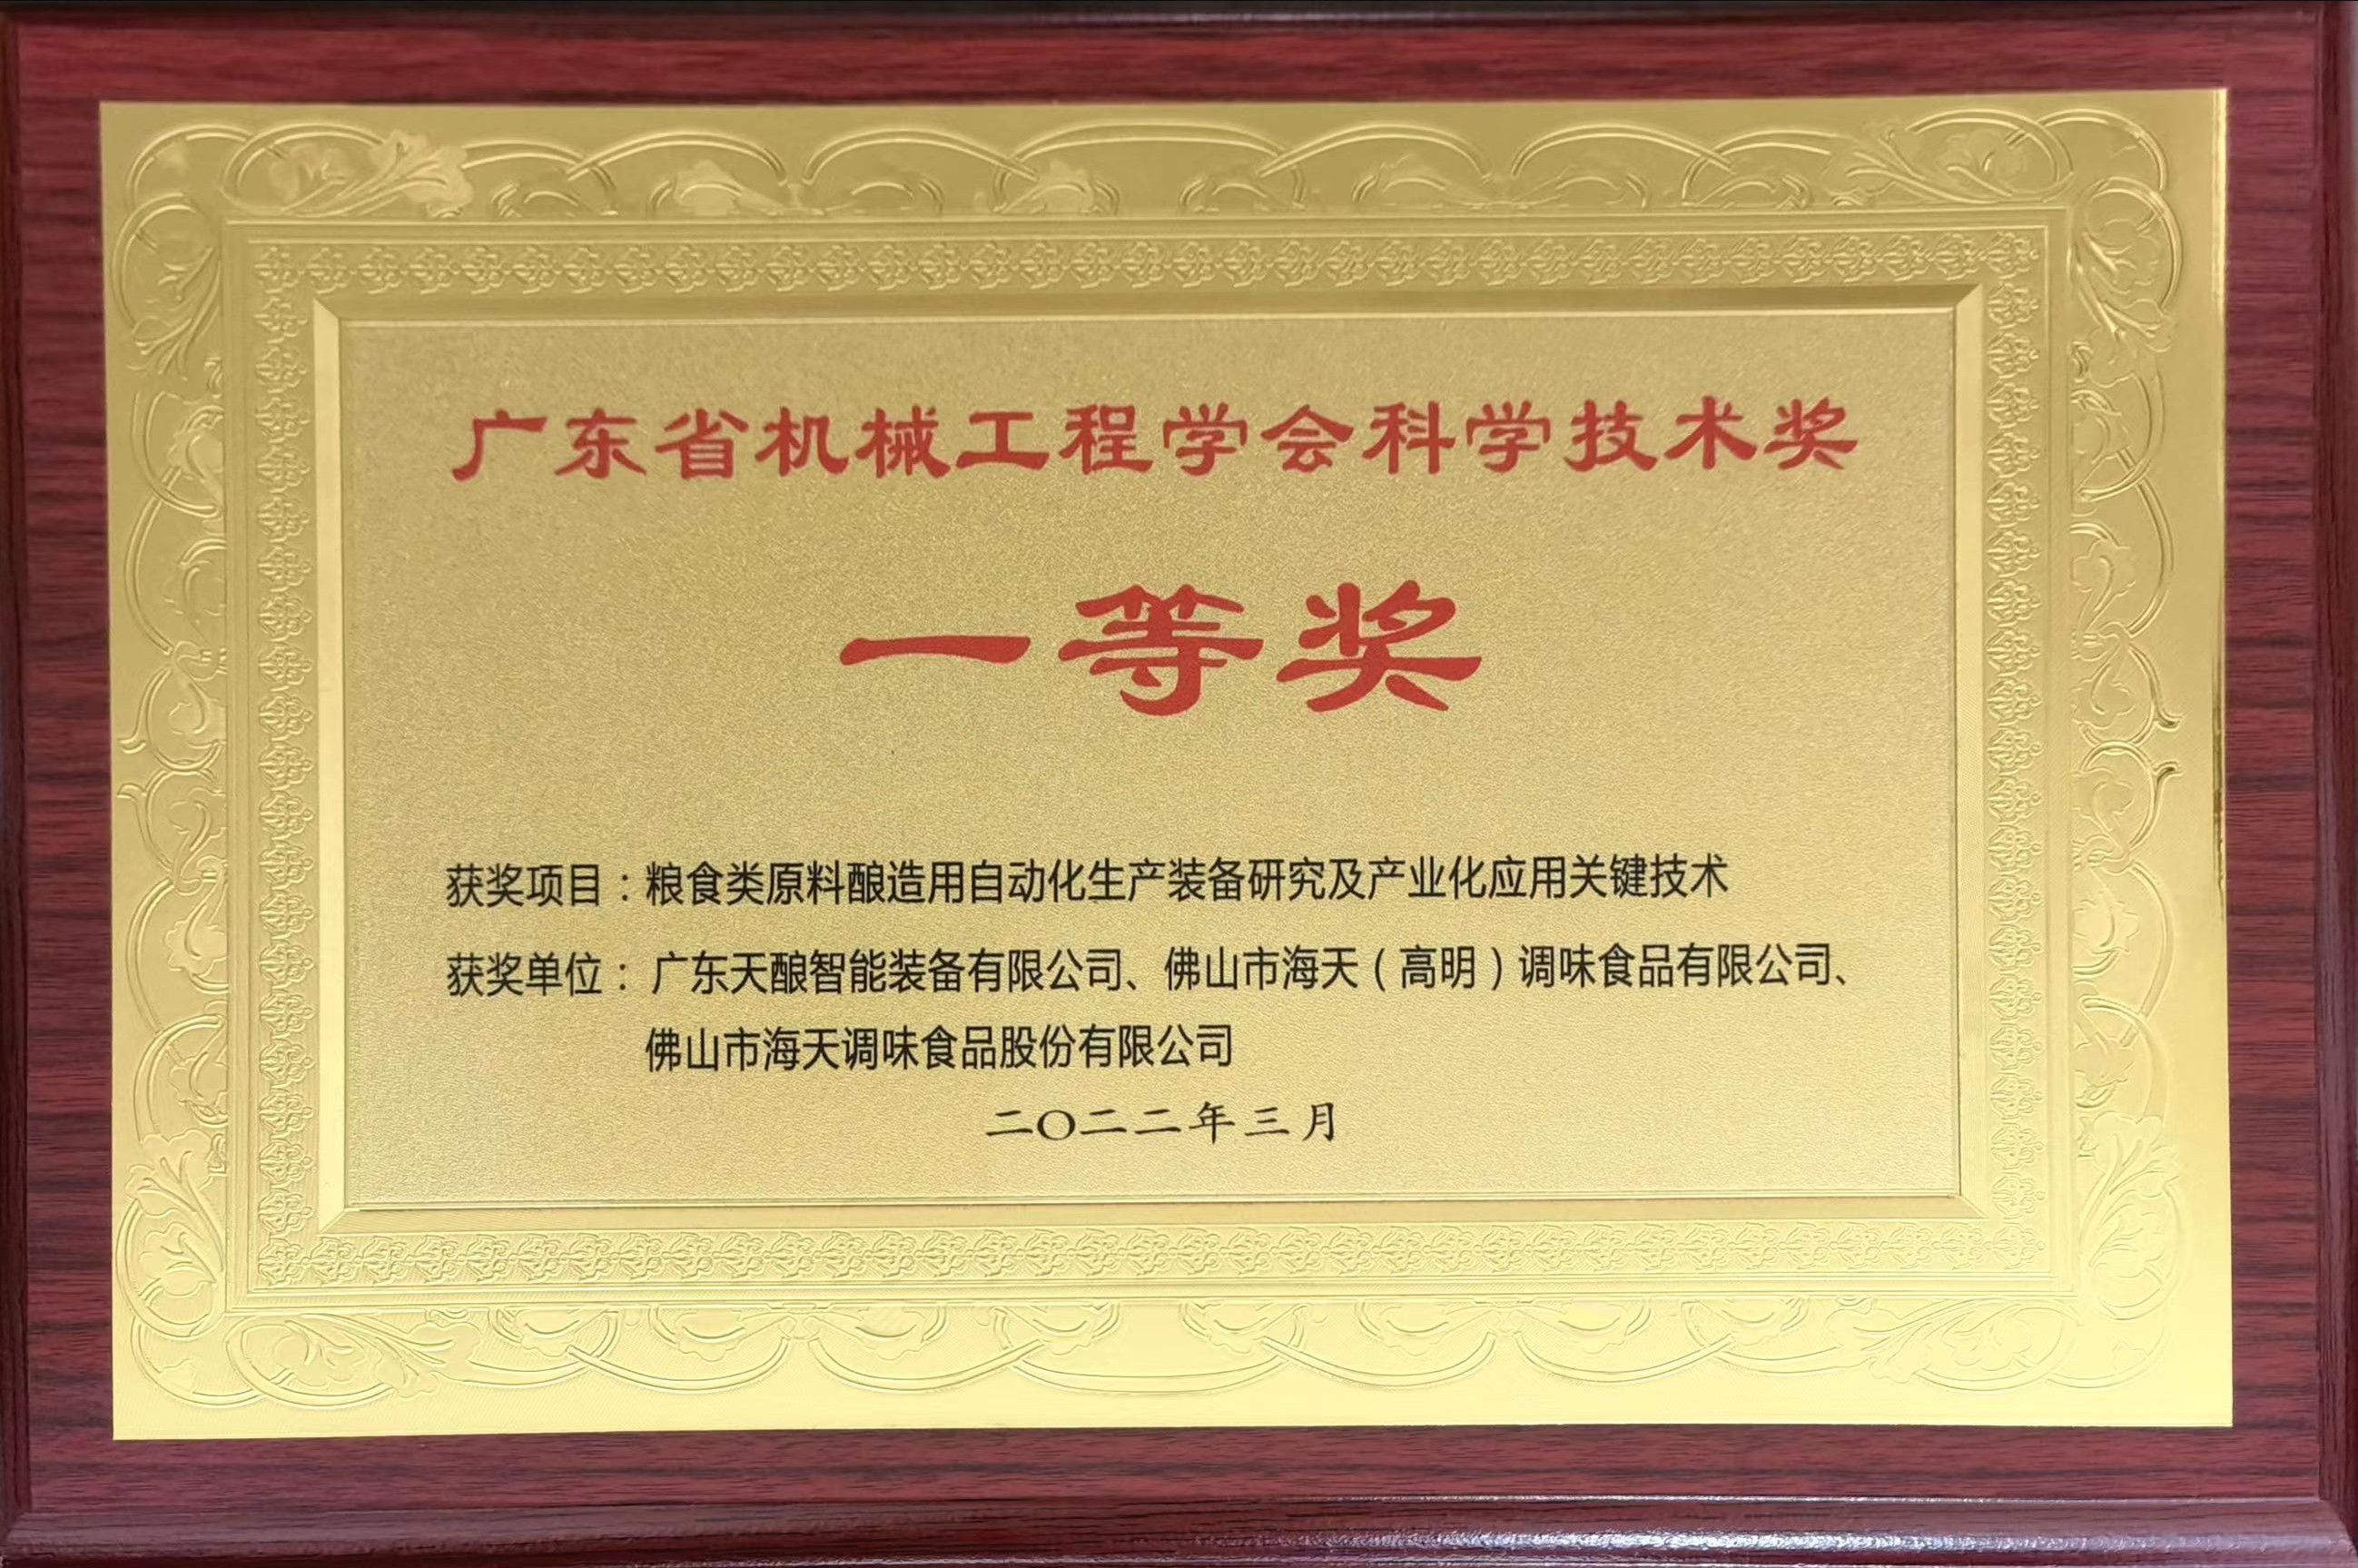 廣東省機械工程學會科學技術獎